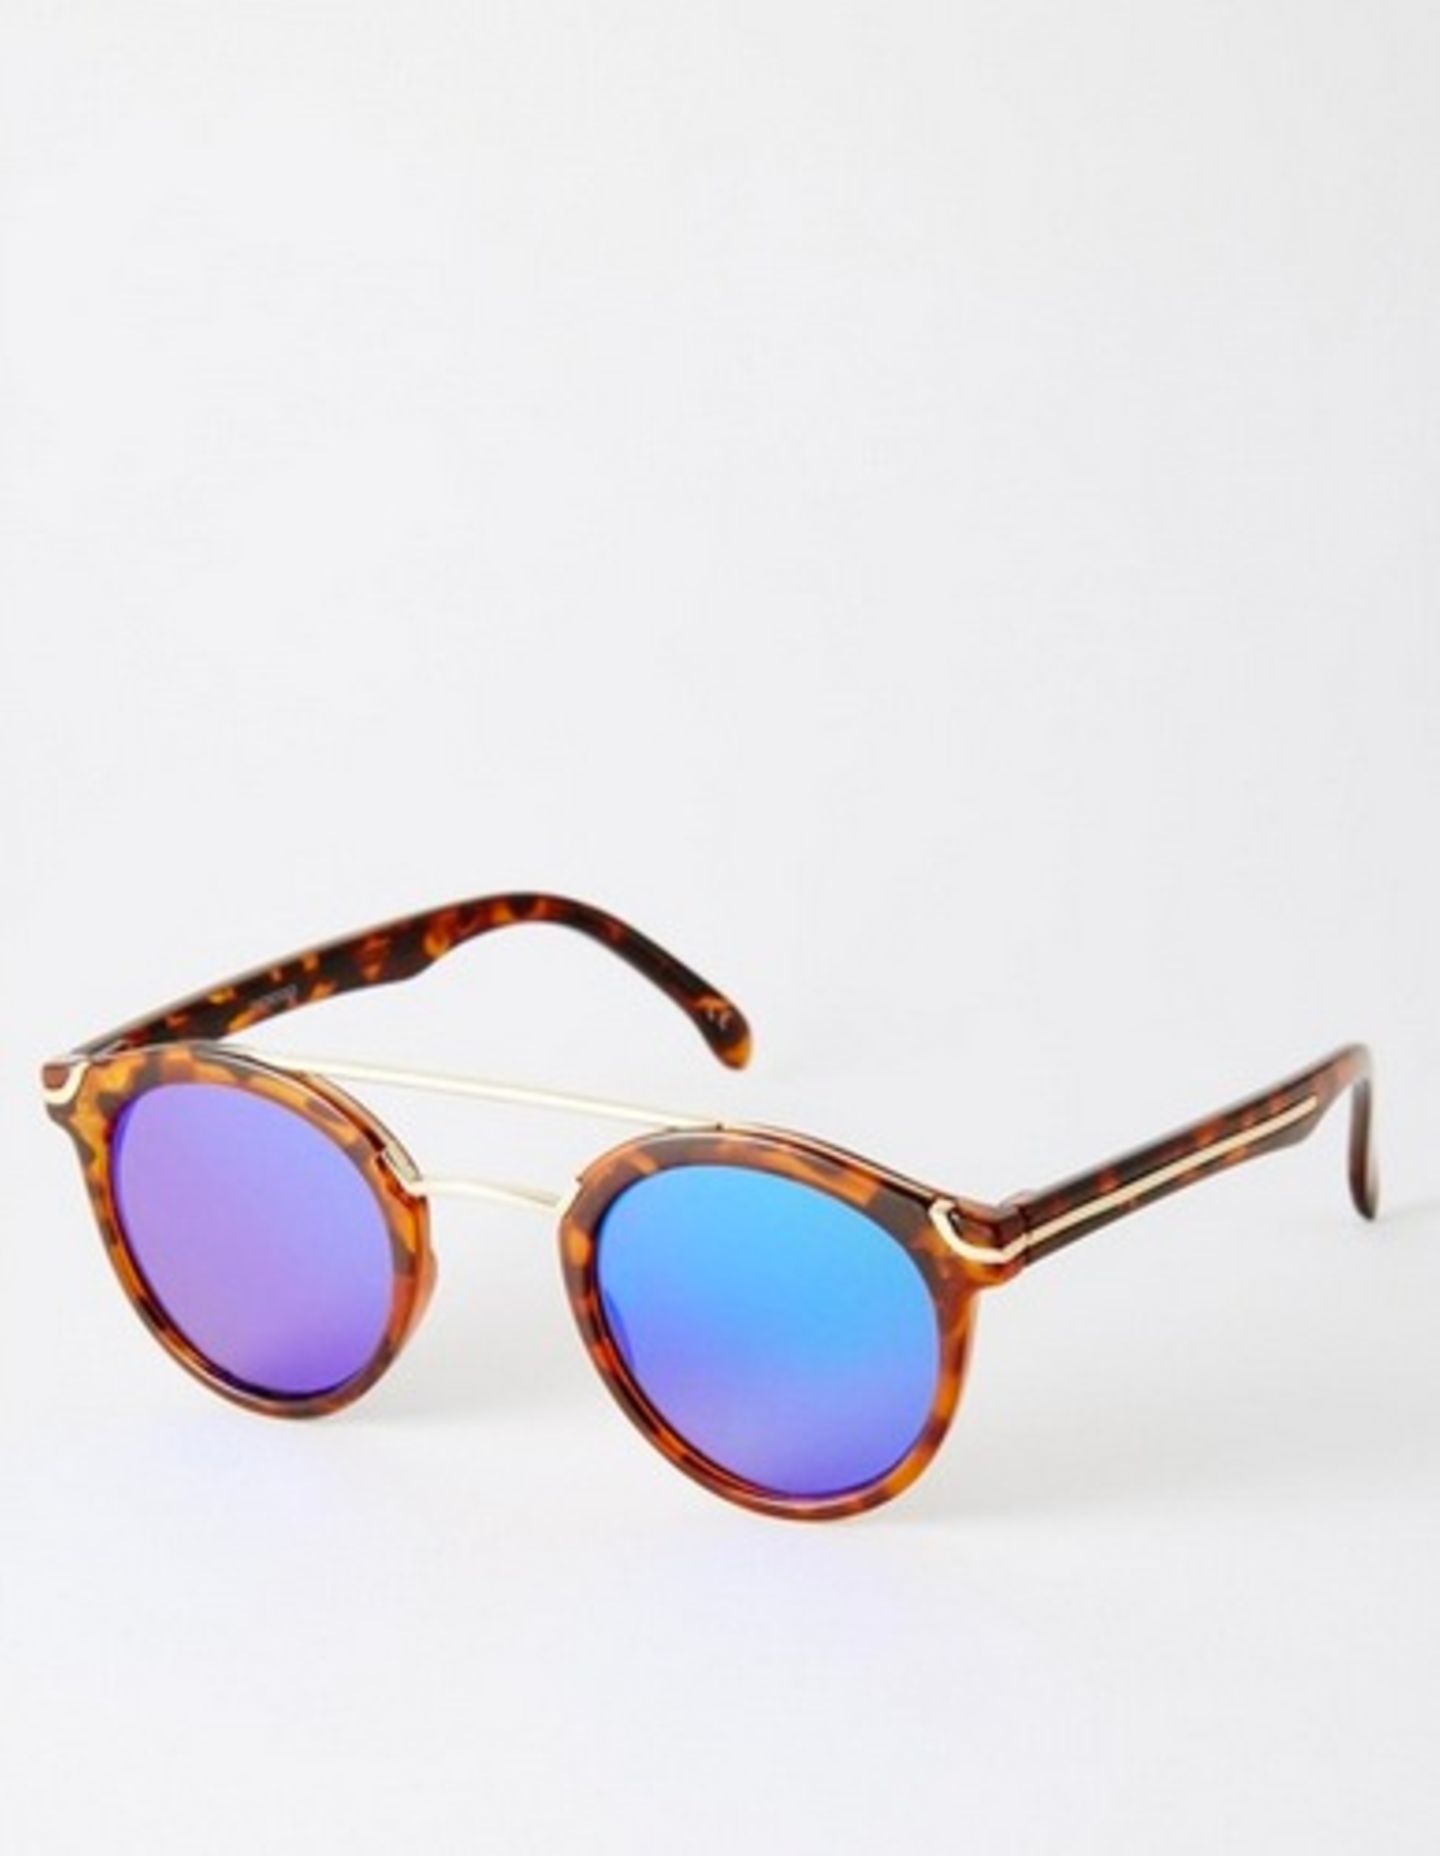 Sommer: Für einen besonderen Tragekomfort hat diese Sonnenbrille verstellbare Nasenpolster aus Silikon, über Asos, ca. 17 Euro.